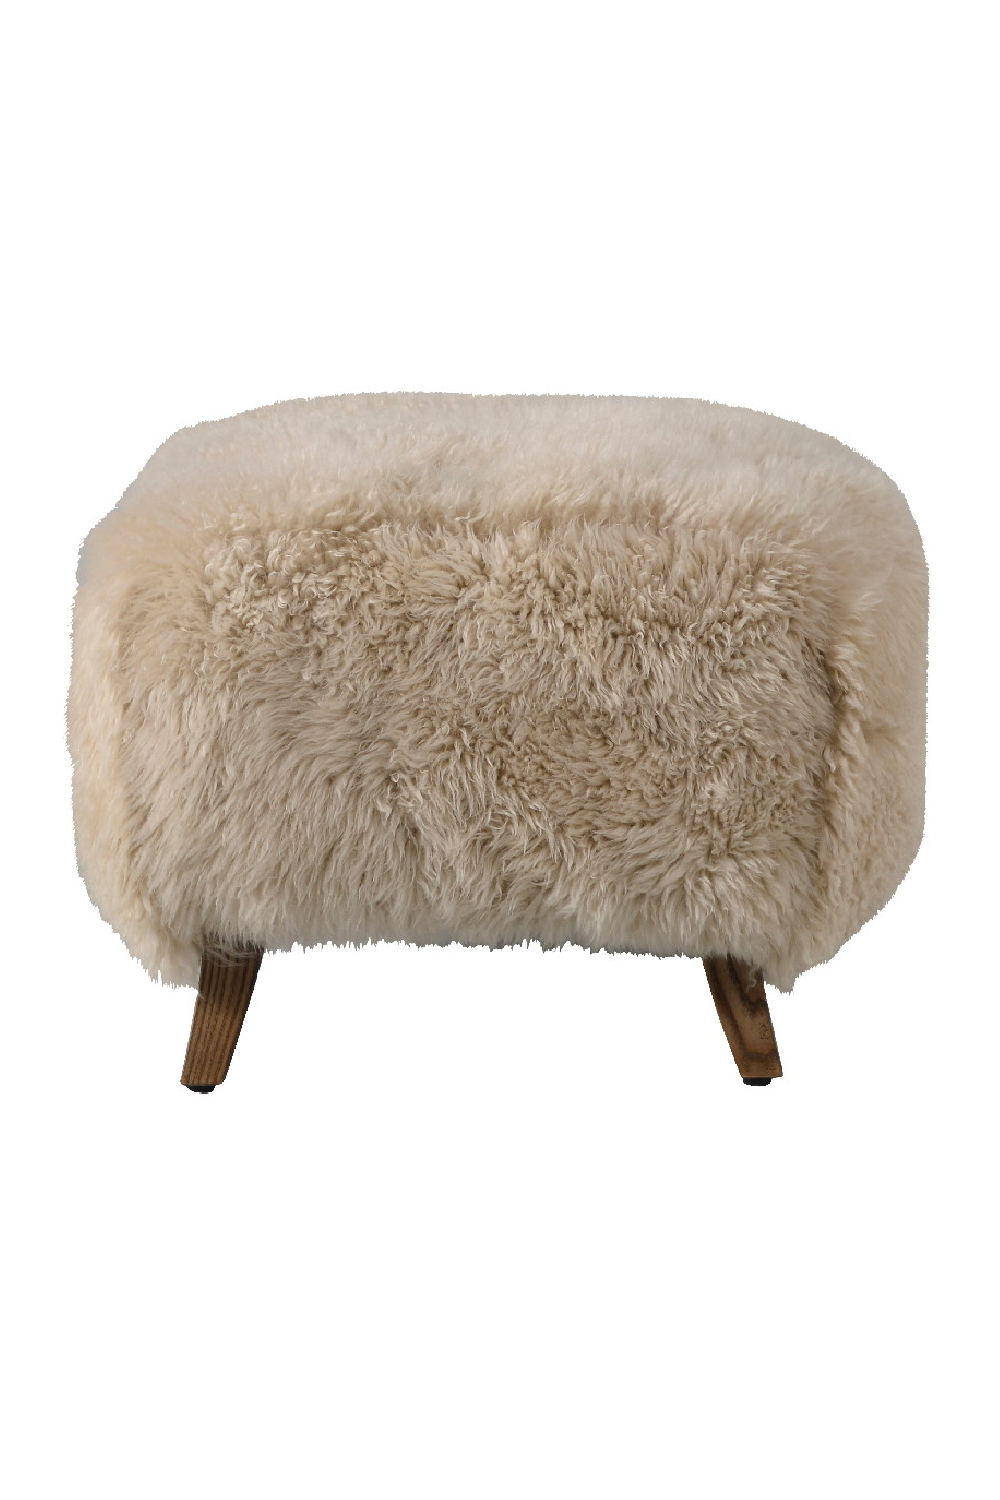 Long-Haired Sheepskin Footstool | Andrew Martin Cabana | Oroa.com